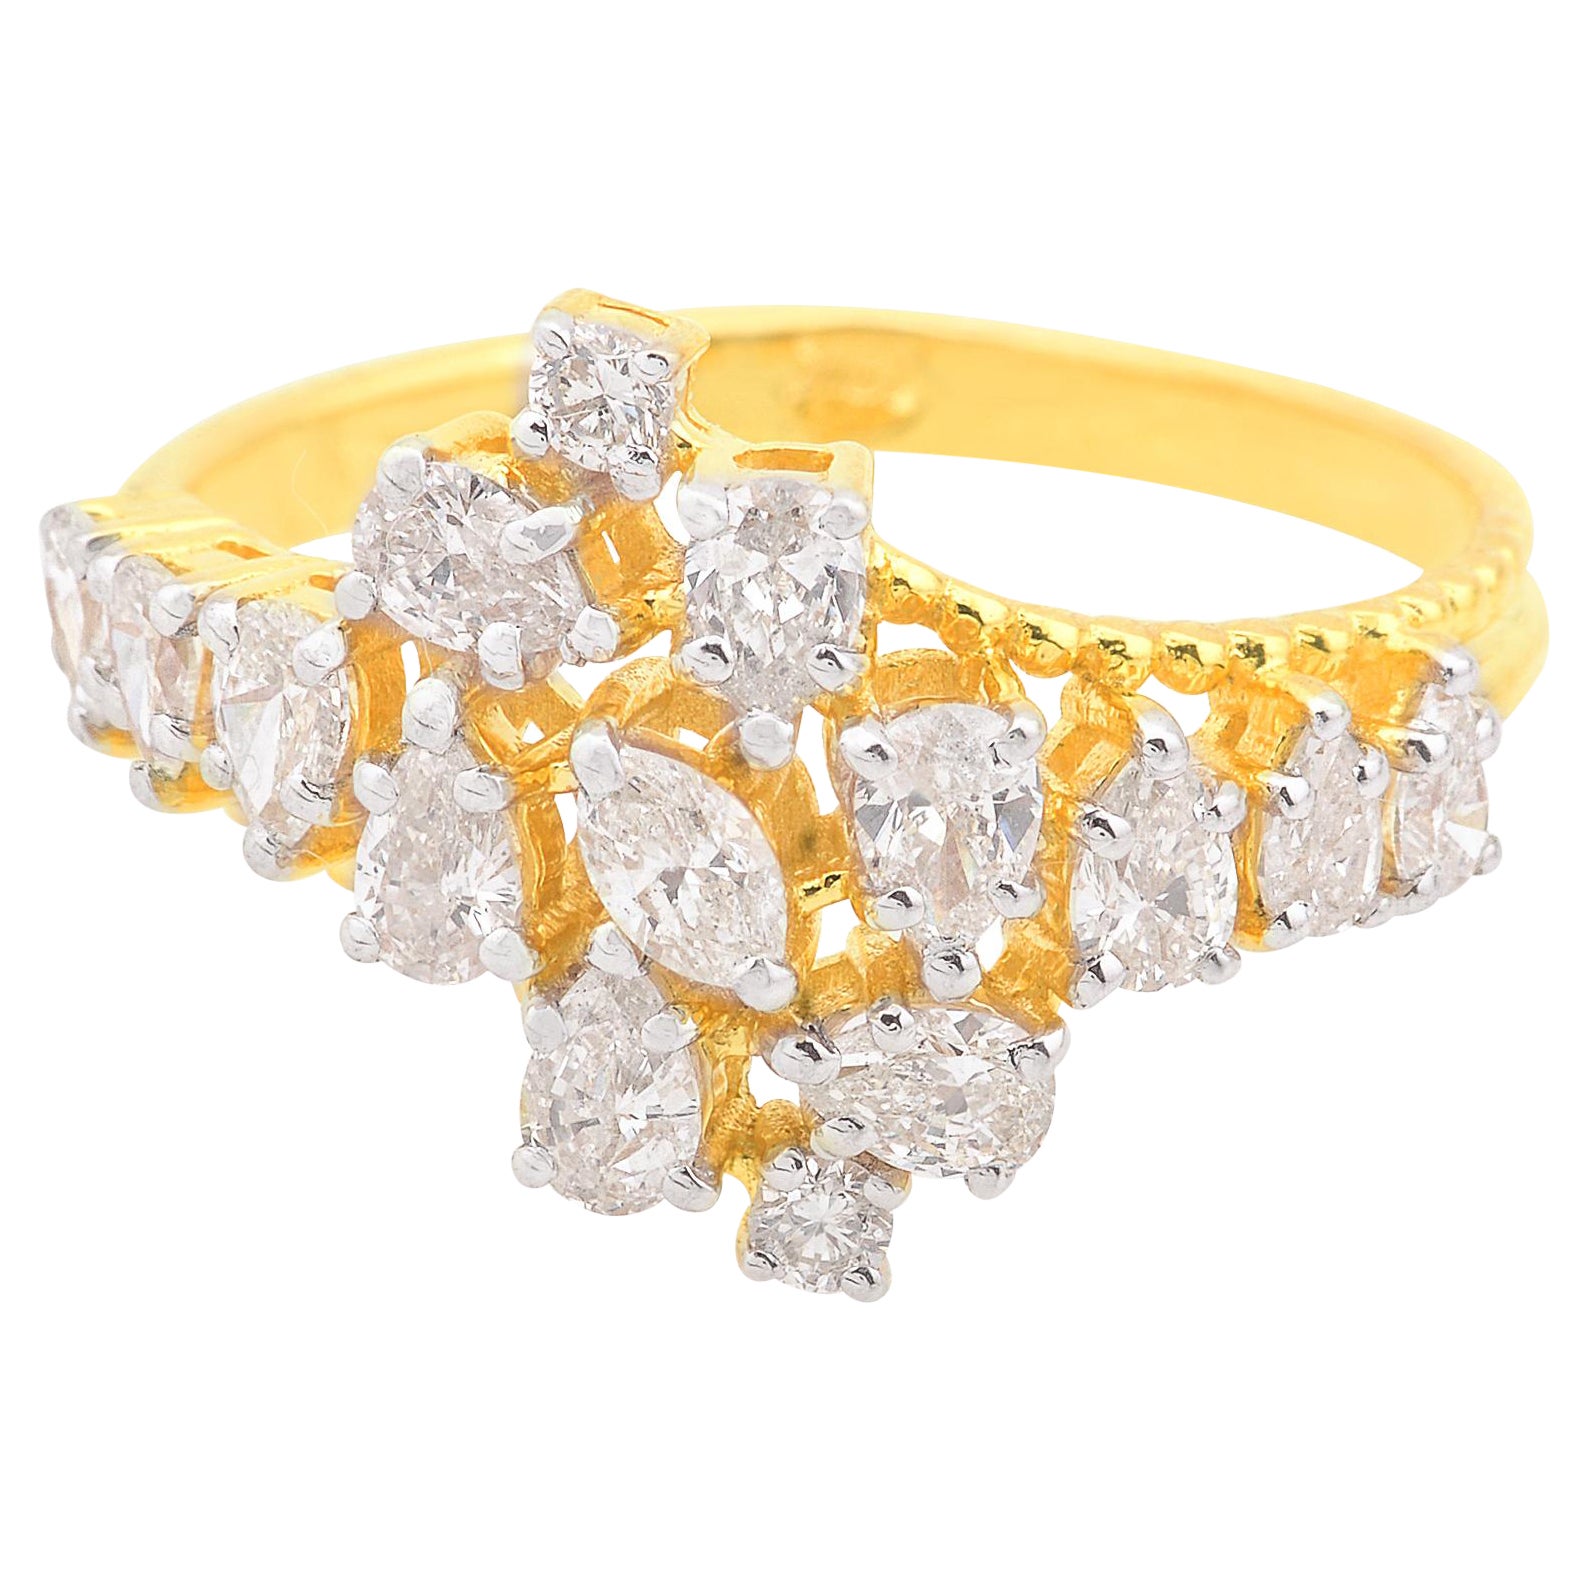 SI Reinheit HI Farbe Marquise Birnen-Diamant Verlobungsring 18 Karat Gelbgold